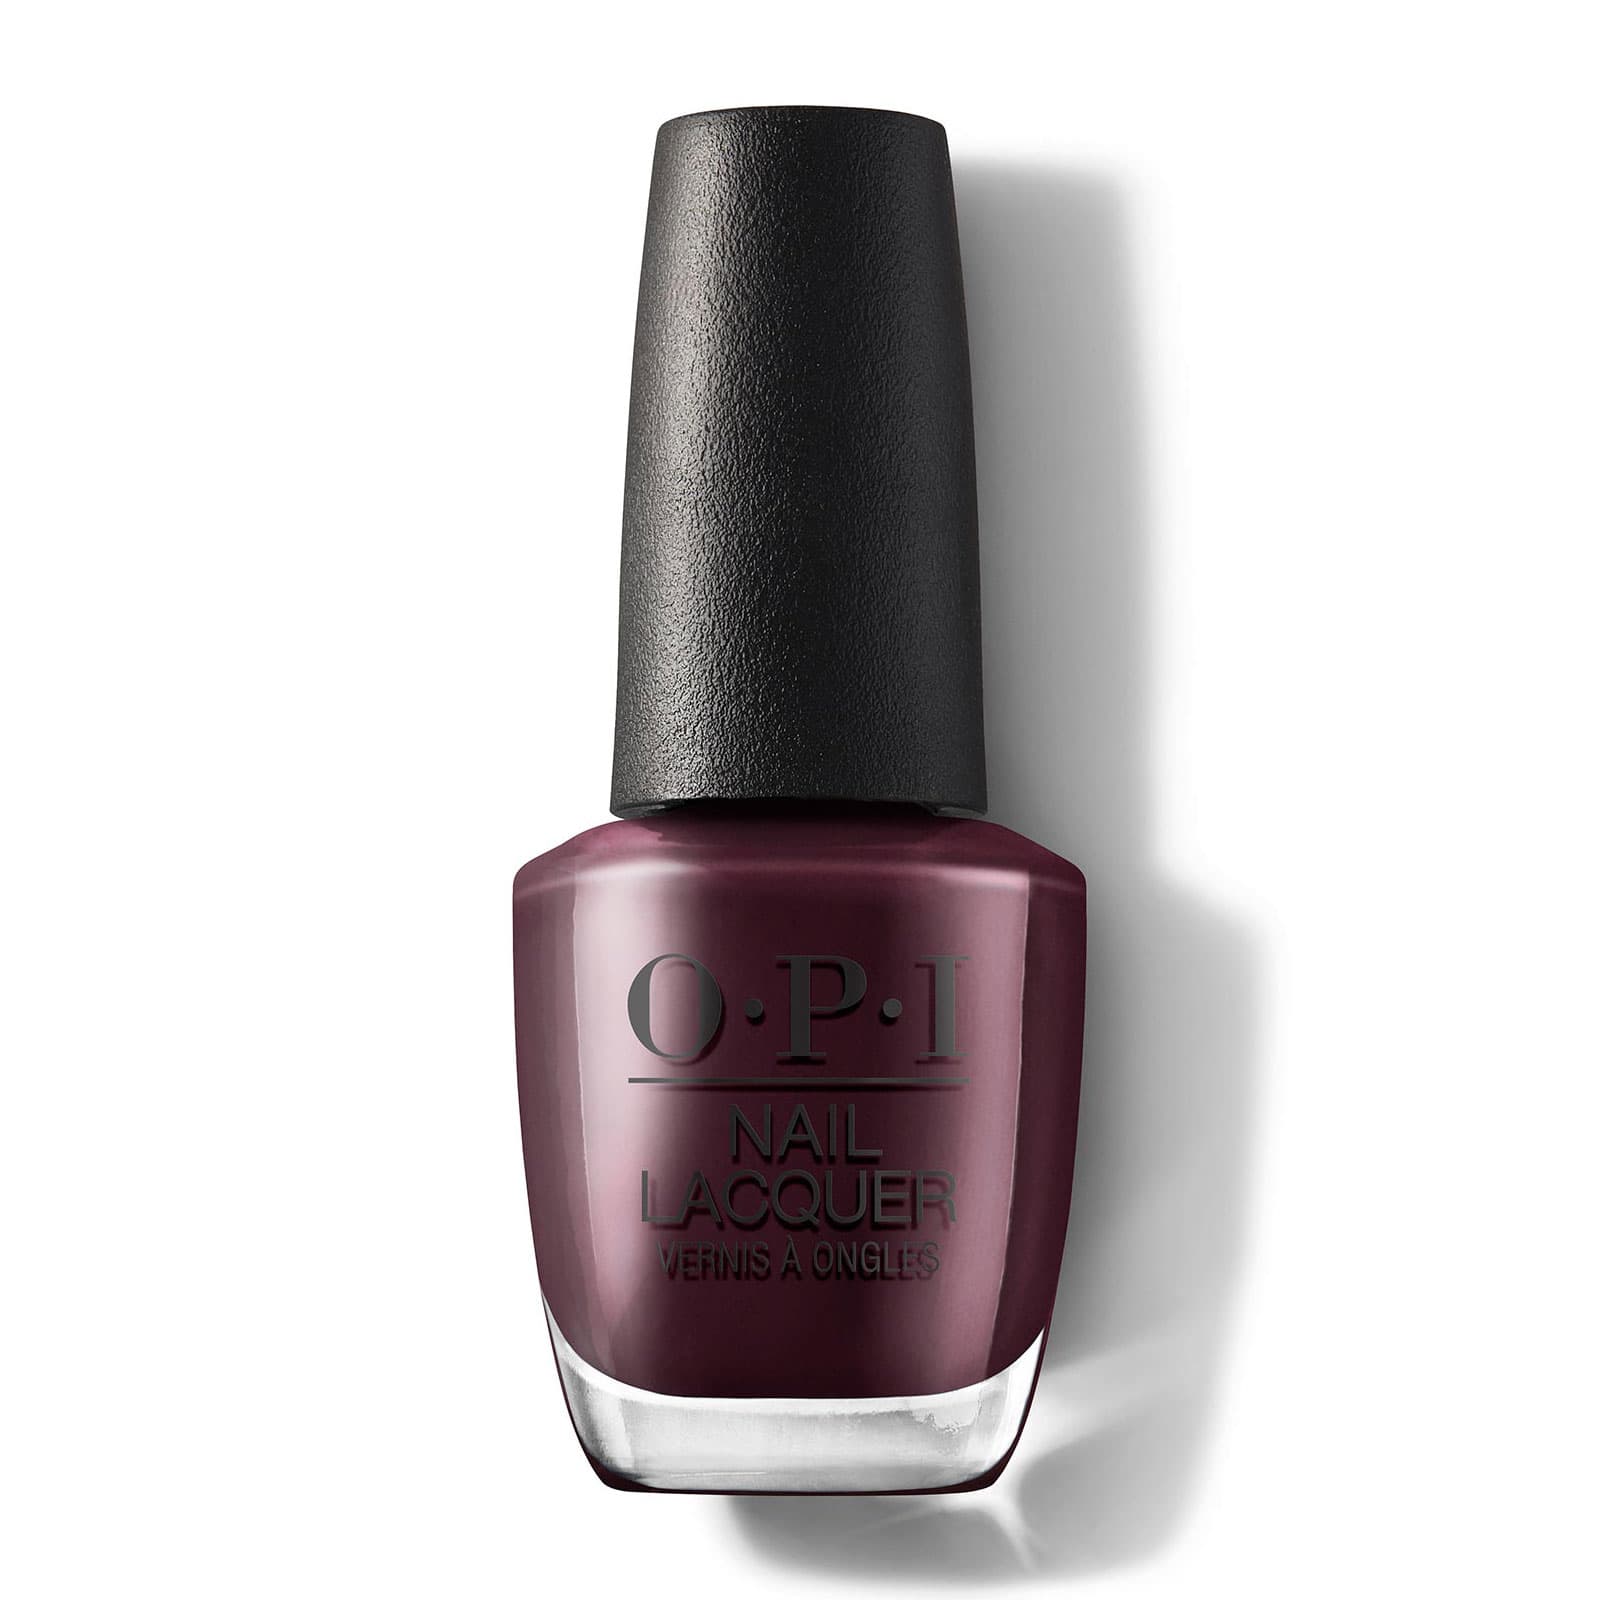 OPI Dip Powder Nail Colors | Dip nail colors, Opi nail colors, Nail dipping  powder colors